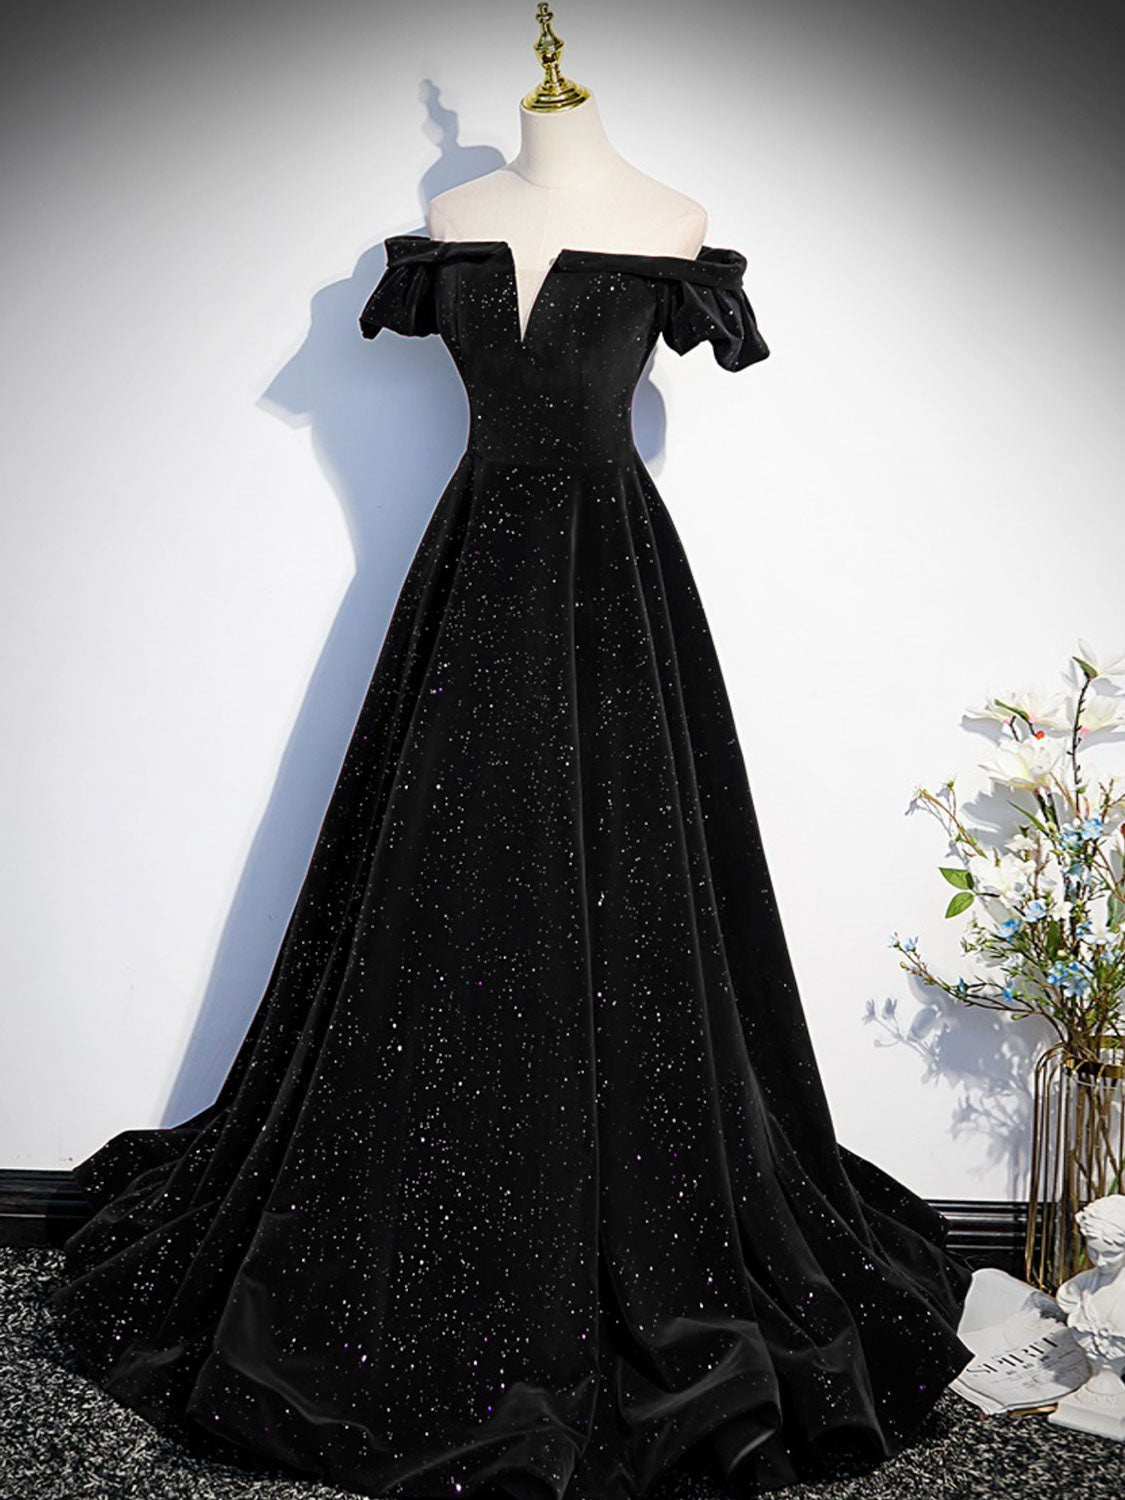 black formal dresses